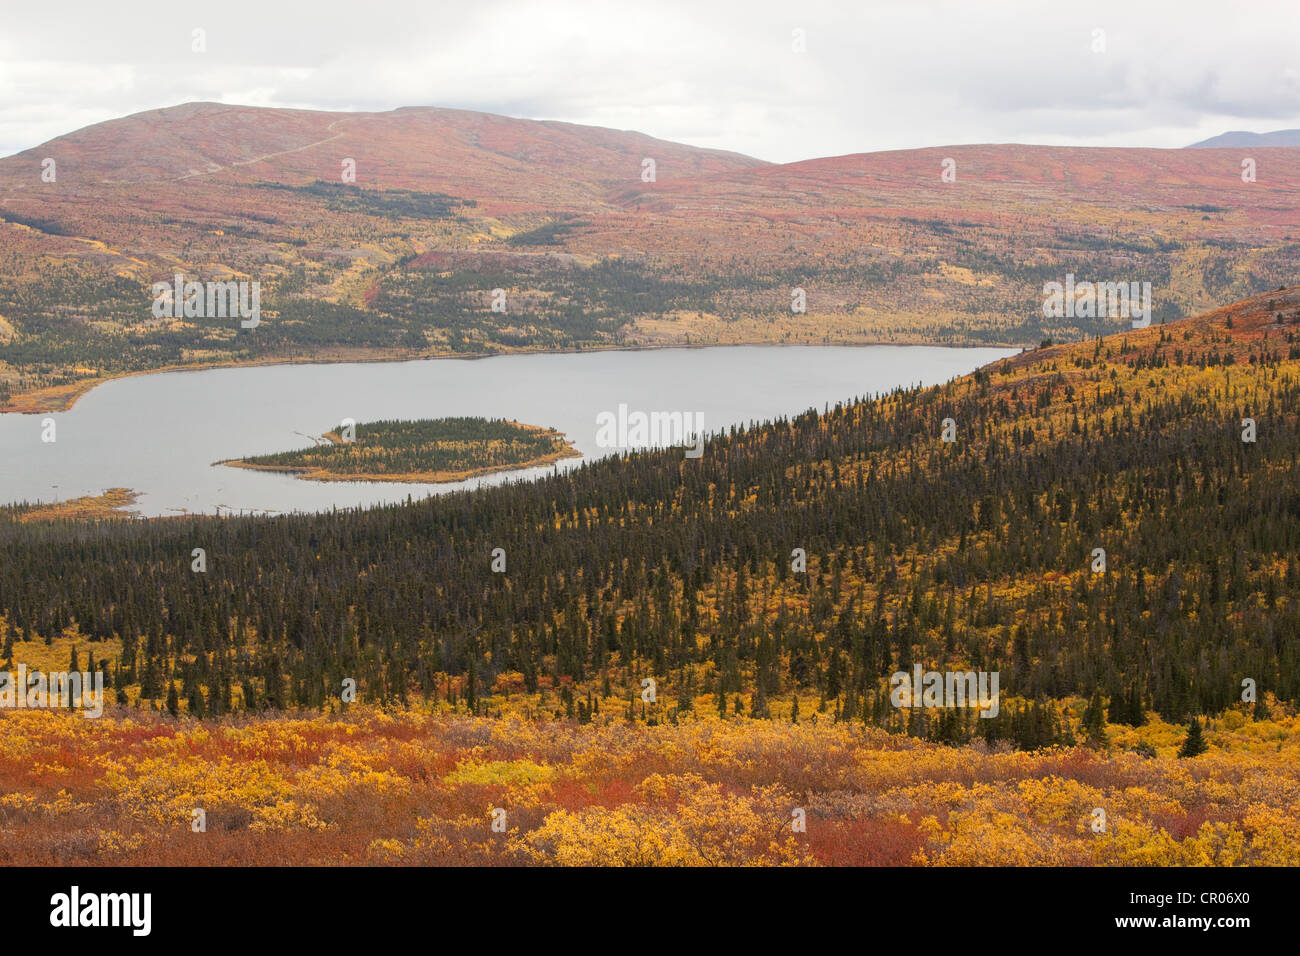 Ansicht, Panorama über Fish Lake und umliegenden sub-alpinen Tundra, Indian Summer, Blätter in Herbstfarben, Herbst, Yukon-Territorium Stockfoto